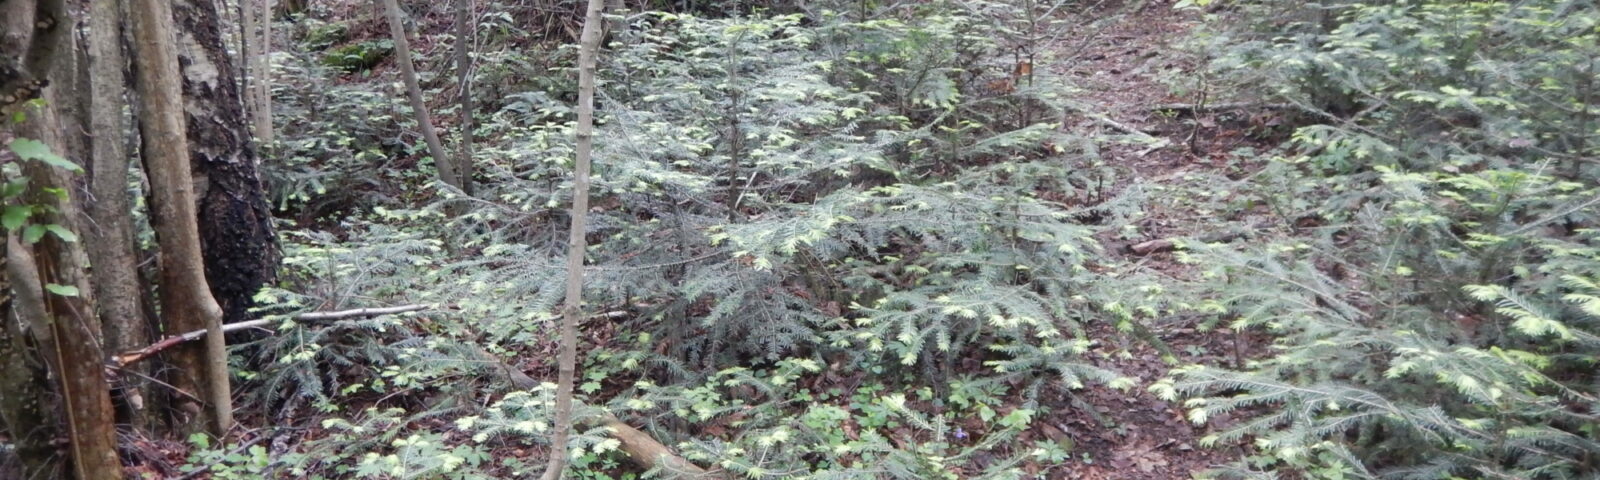 Skogbunnen i verneområdet er nesten helt dekket av småplanter av edelgran